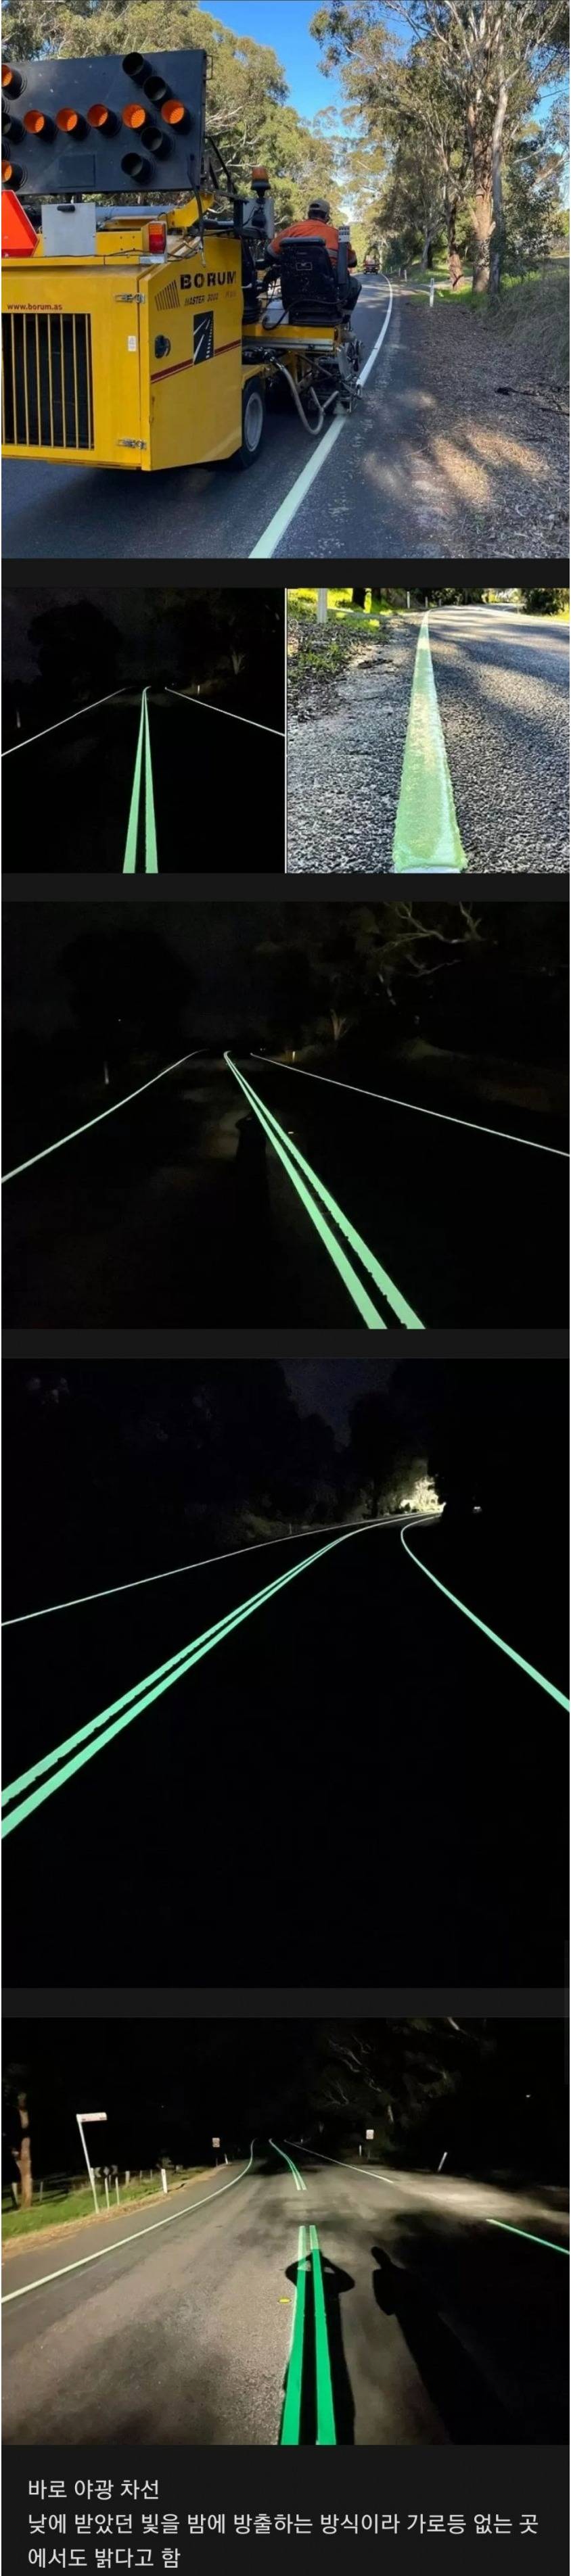 [유머] 호주에서 야간 교통사고를 줄이기 위해 도입한 것 -  와이드섬